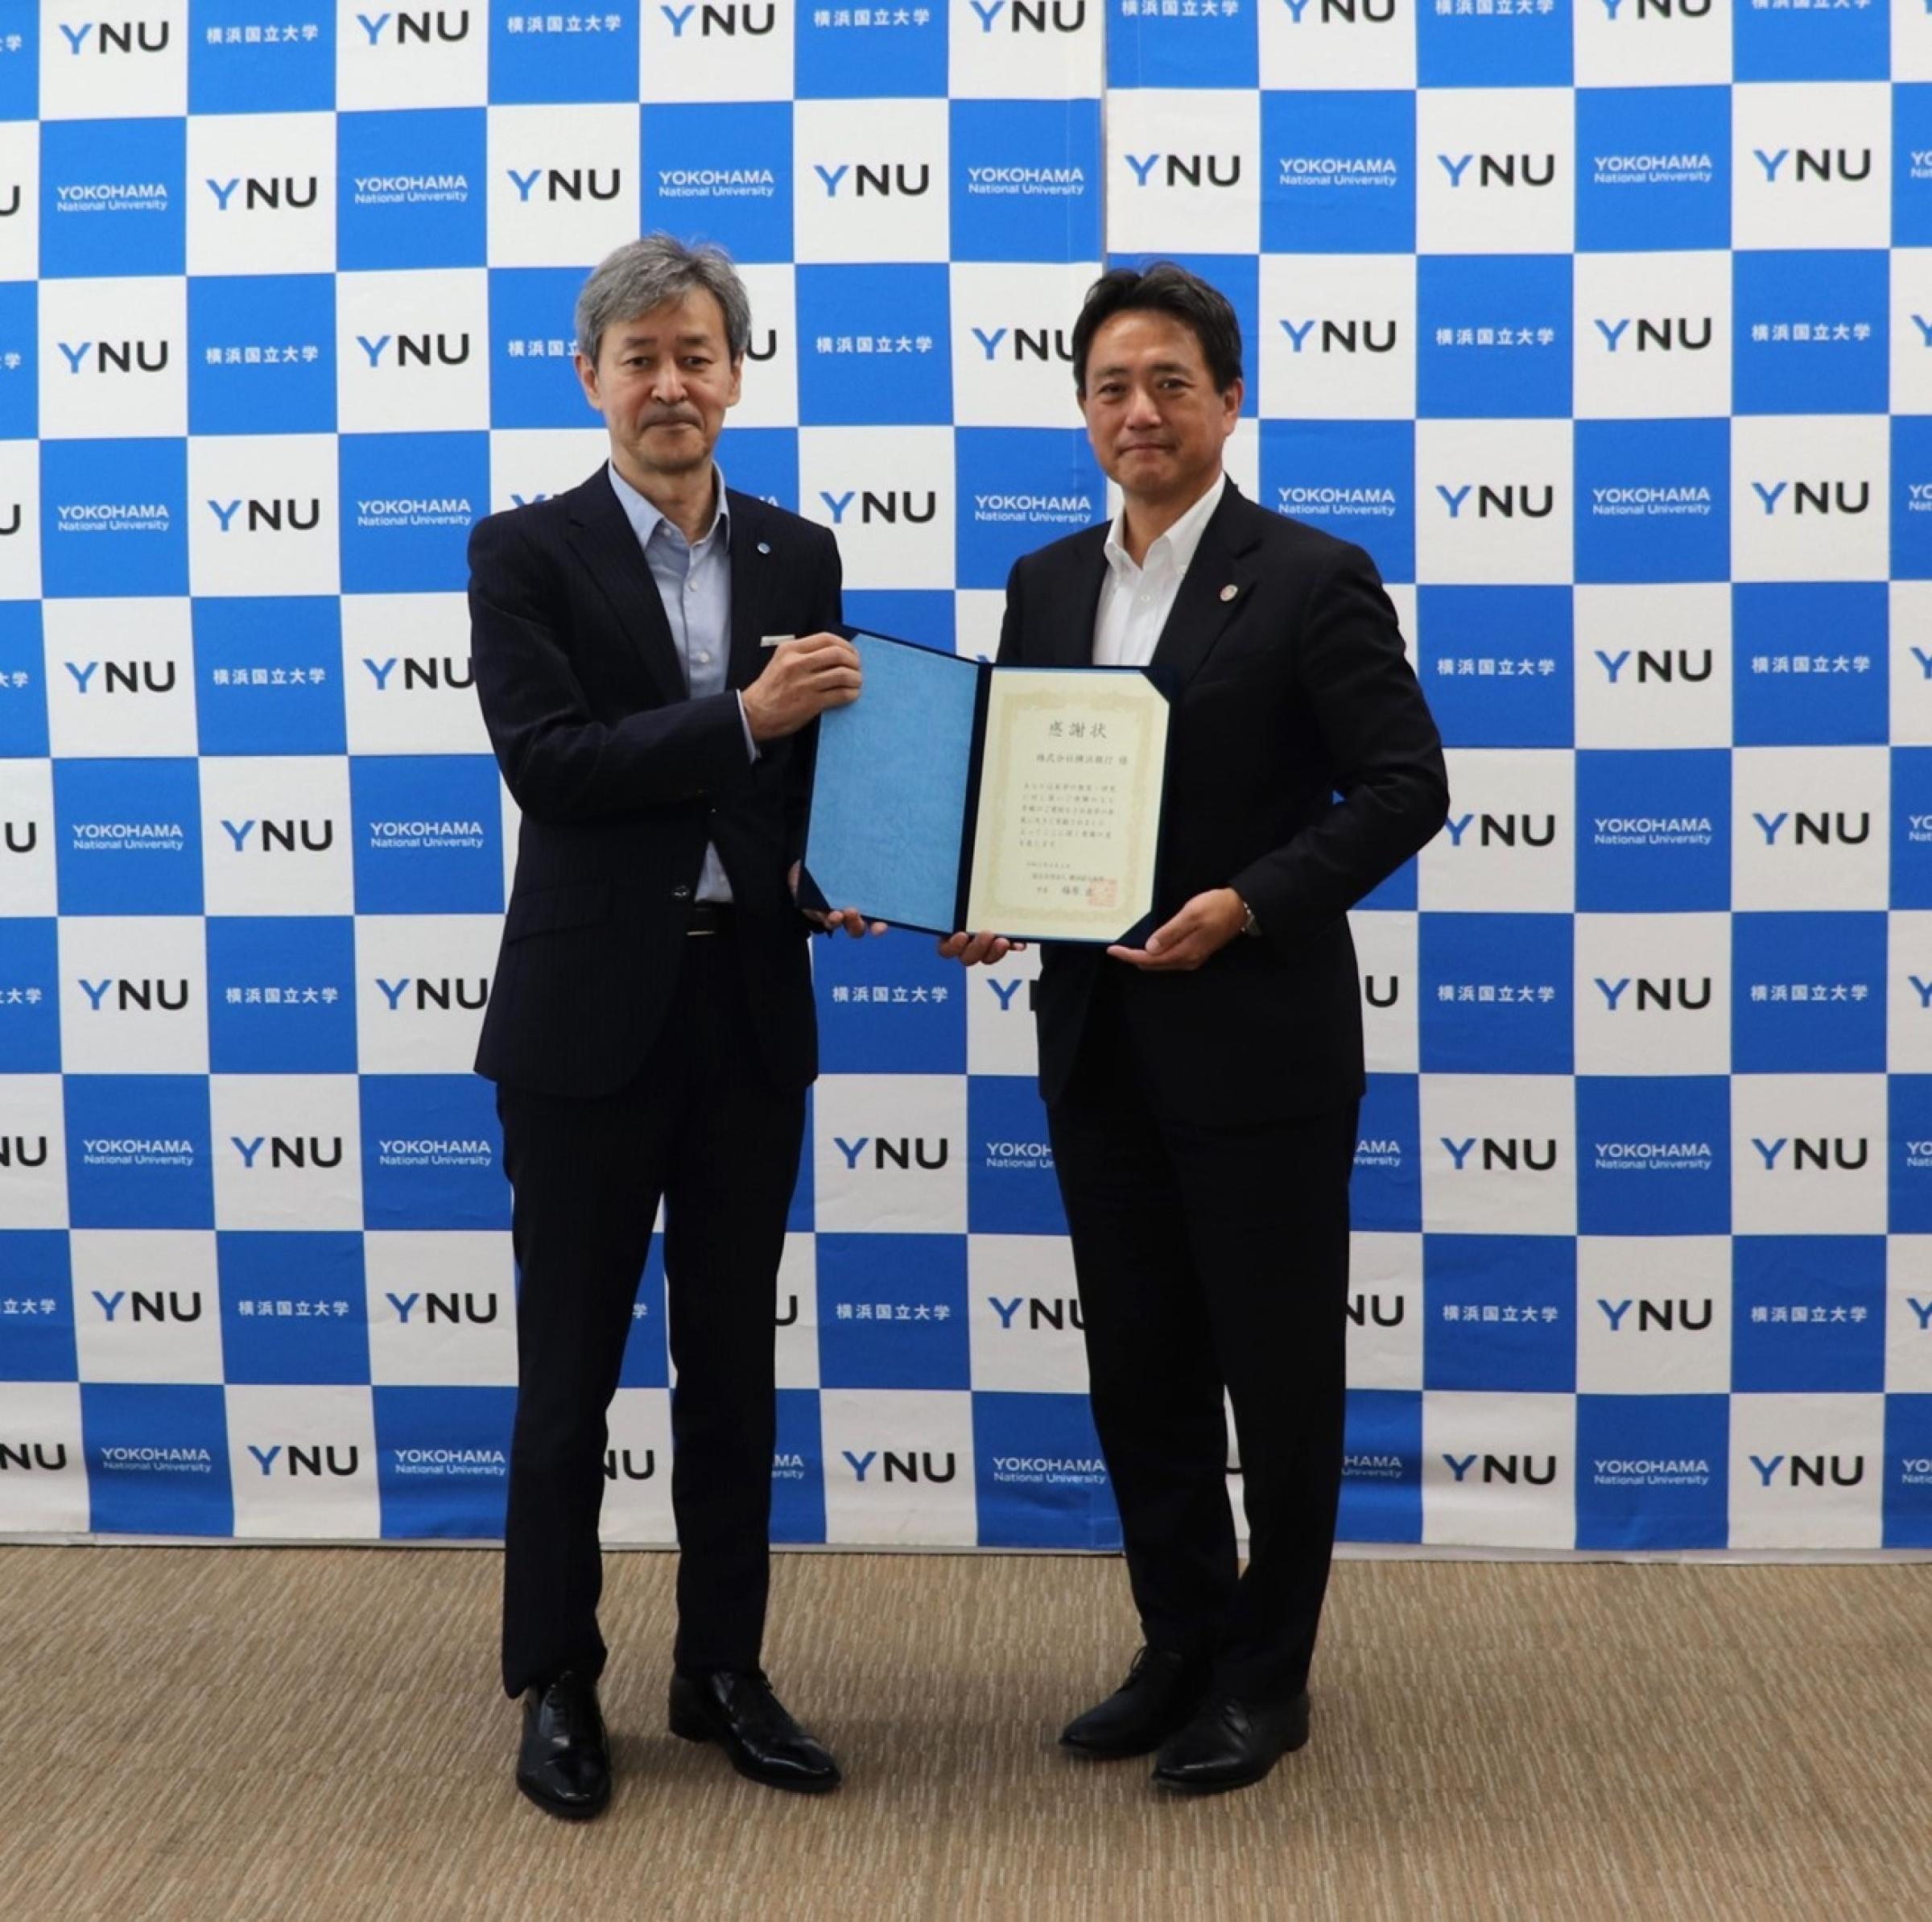 株式会社横浜銀行 代表取締役頭取 片岡達也 様(右)と梅原学長(左)